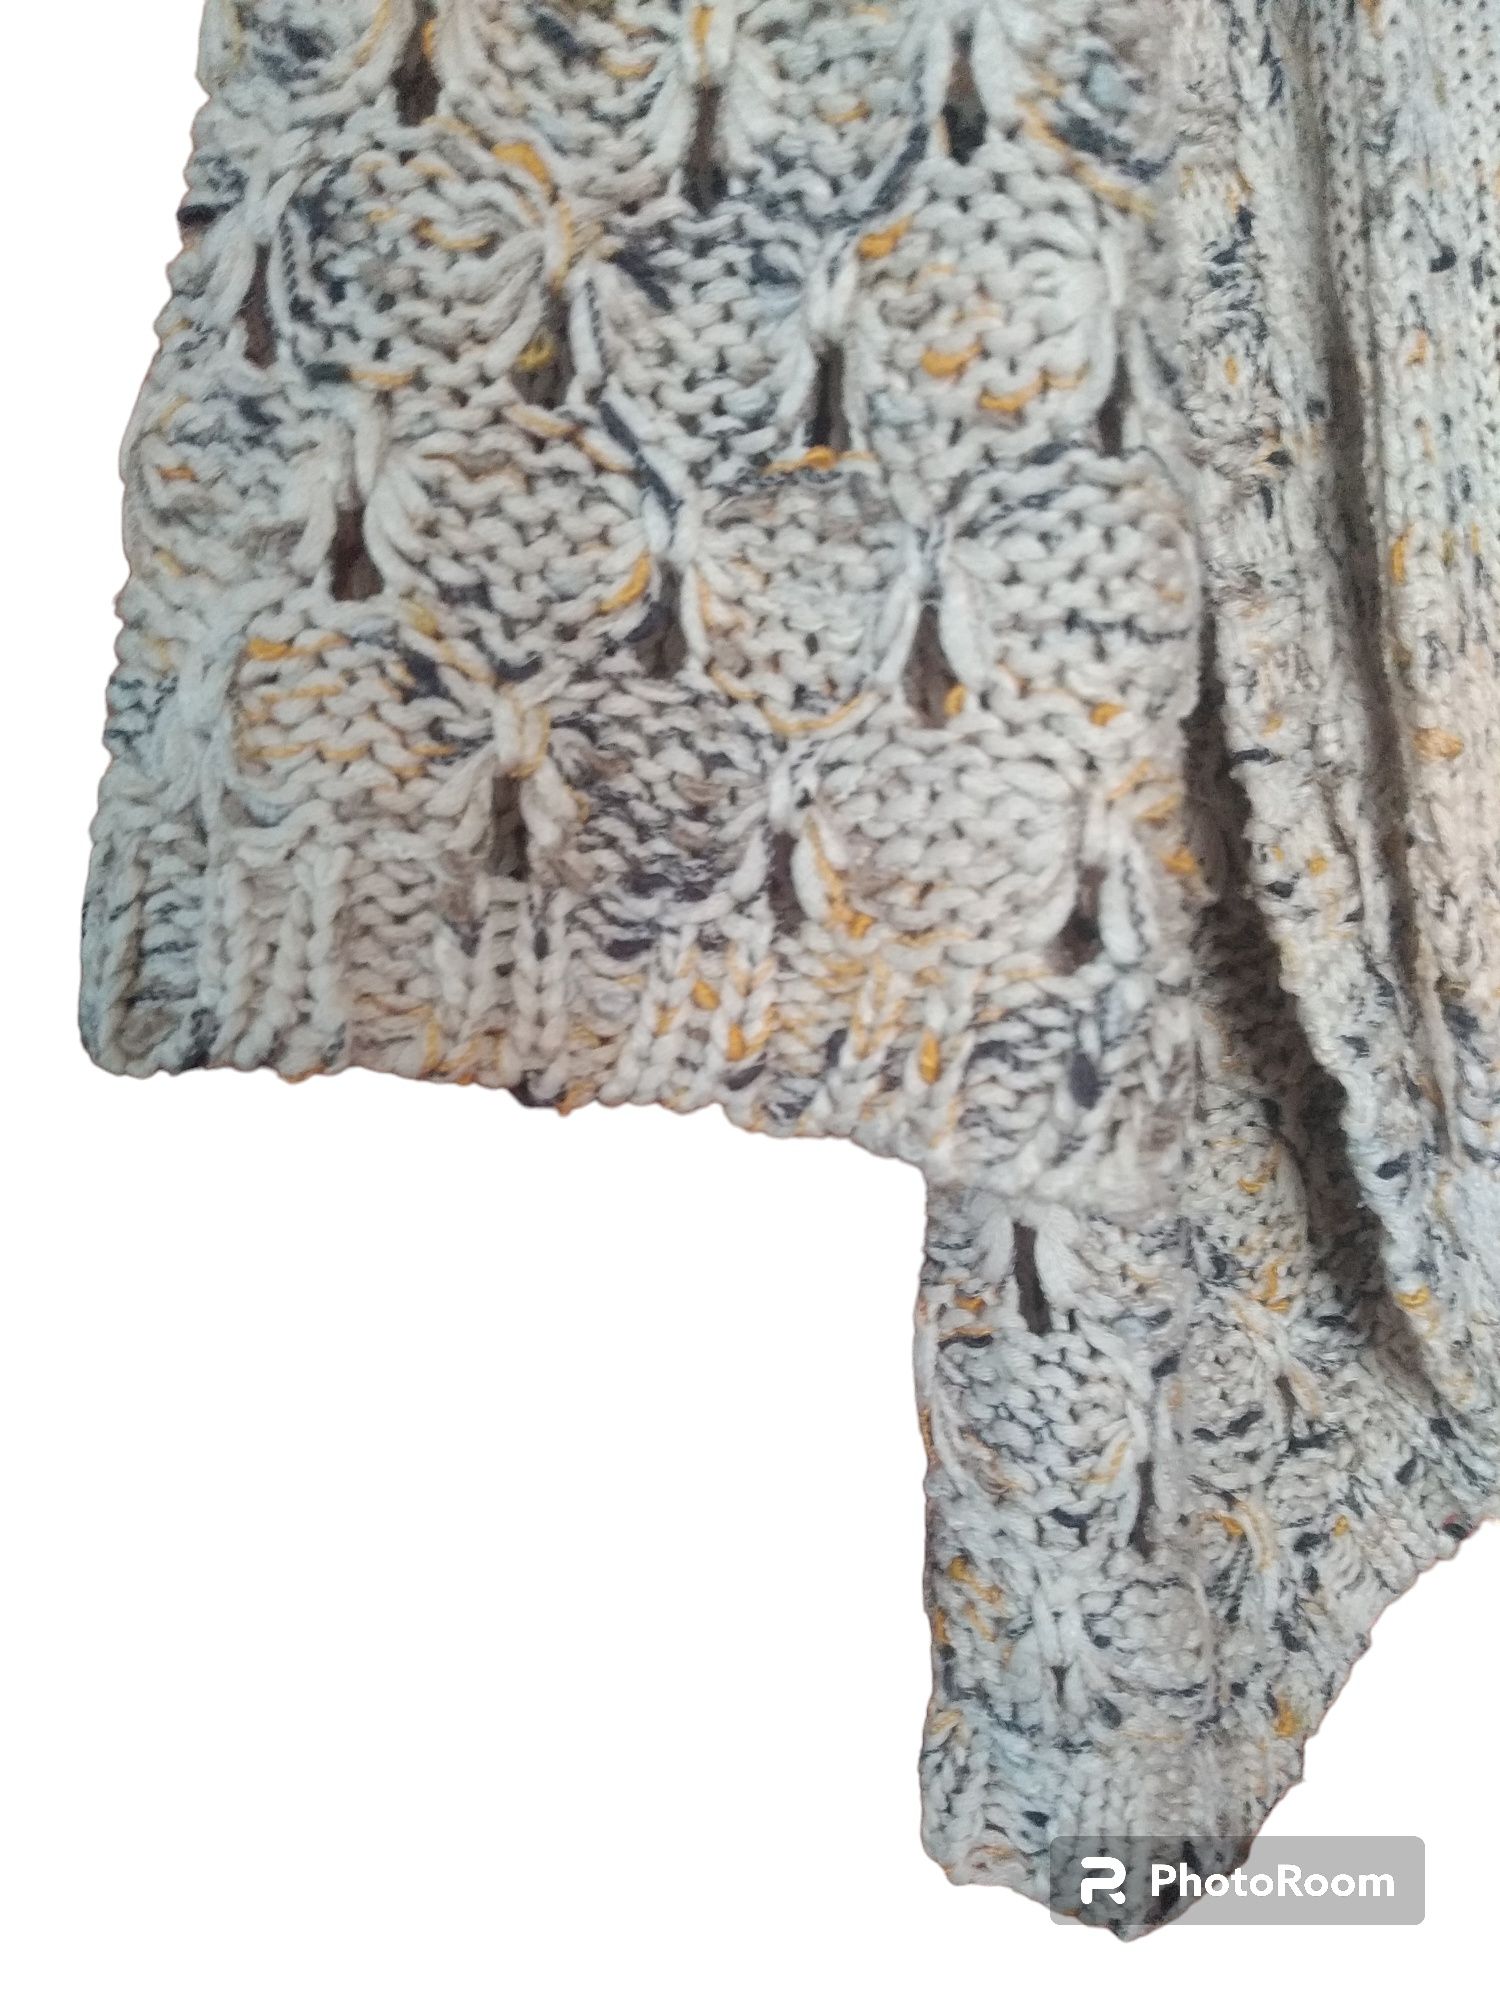 Женская кофточка - накидка 46-50 размер, бежевый цвет.